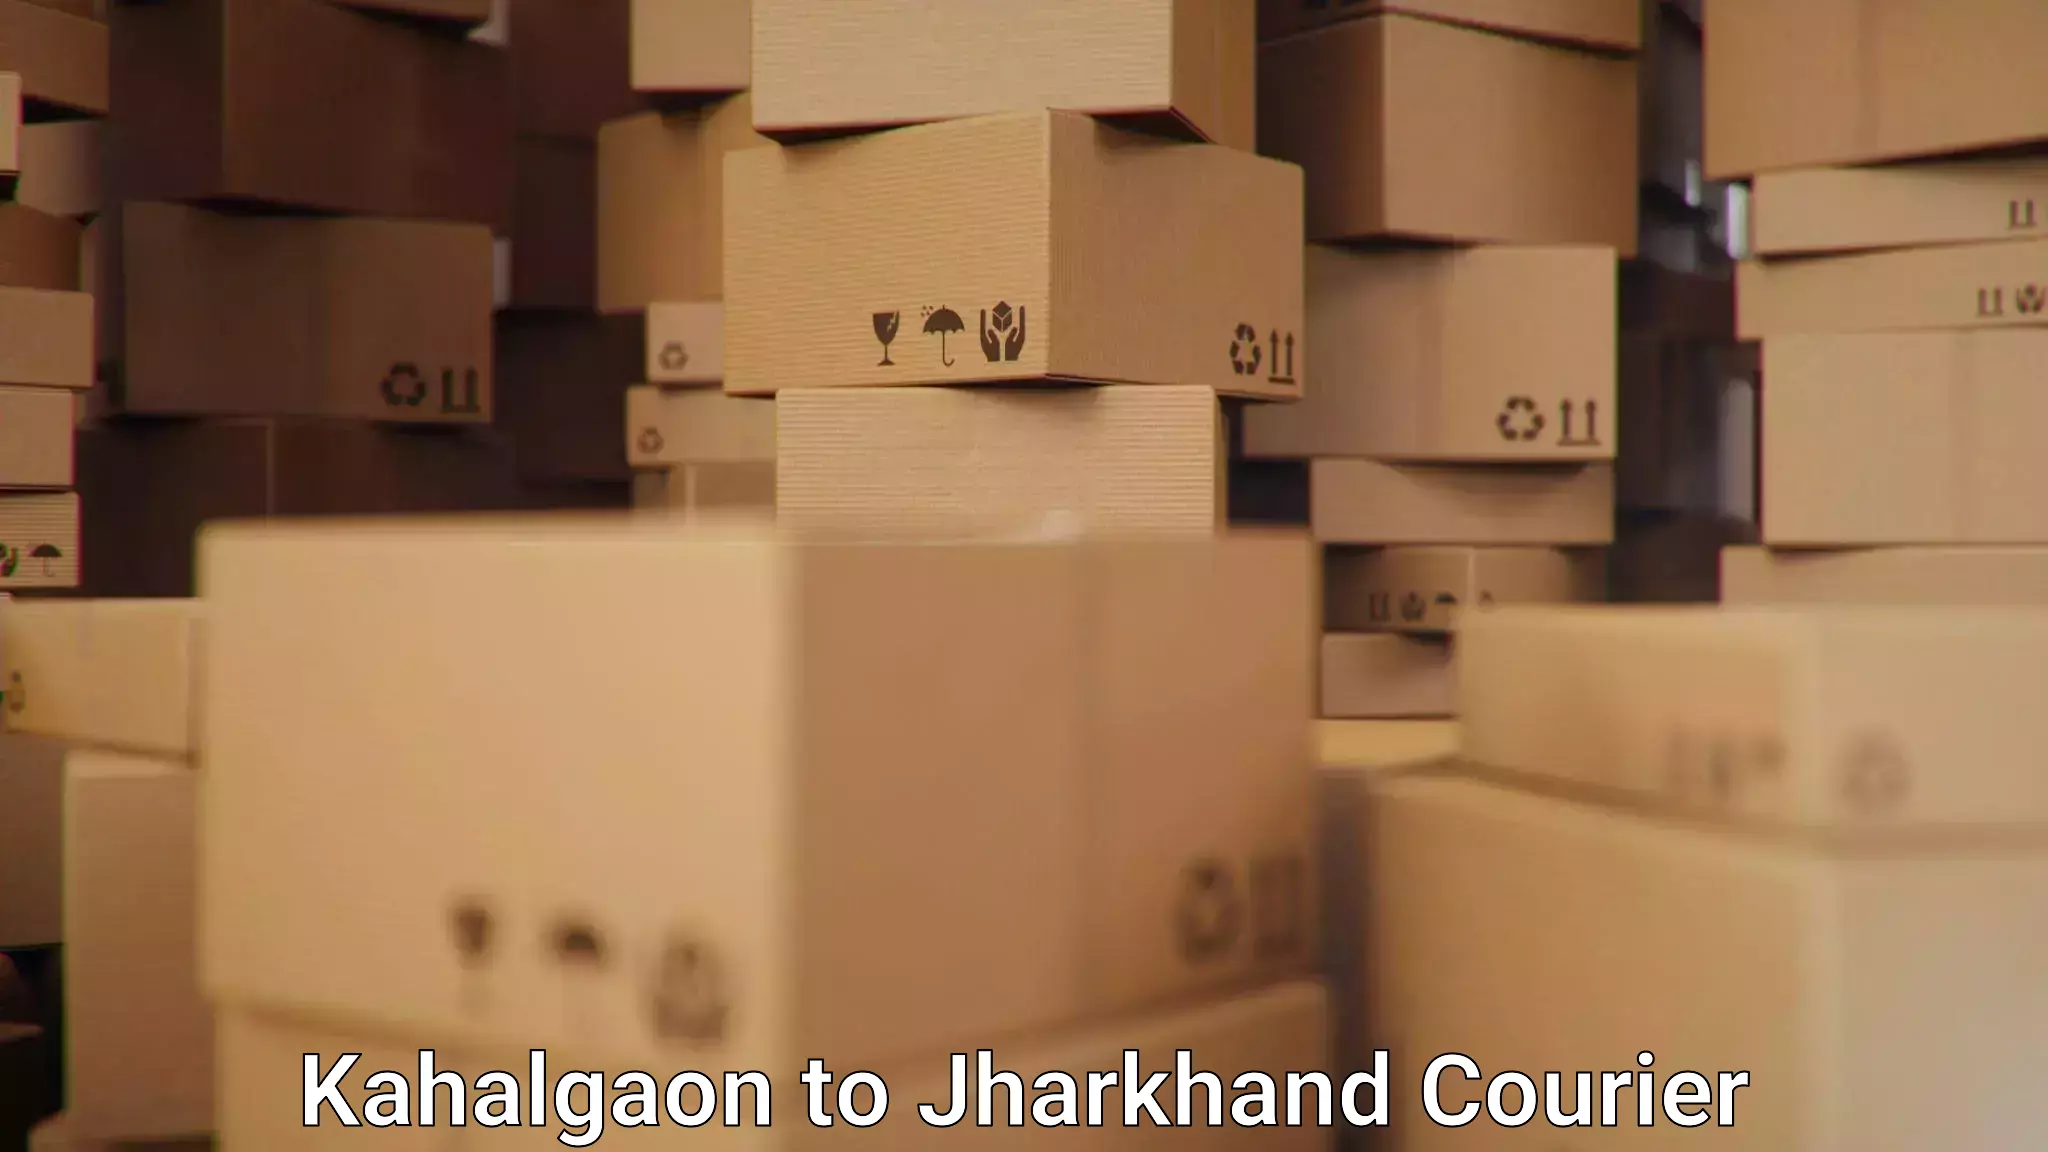 Bulk courier orders Kahalgaon to Bokaro